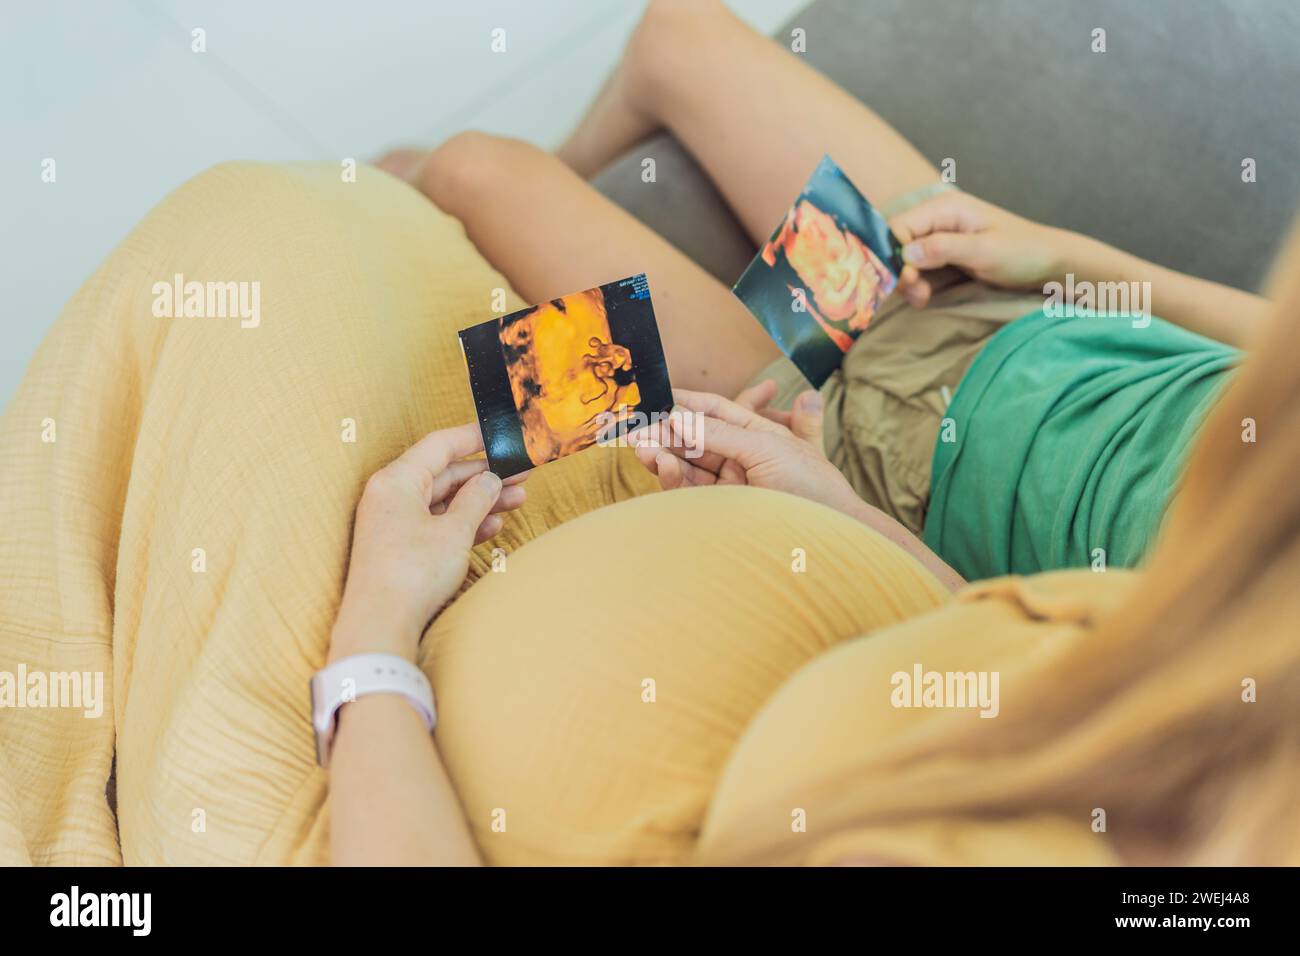 Die werdende Mutter teilt zärtlich die Freude ihres ungeborenen Babys mit ihrem Sohn und zeigt ihm herzerwärmende Ultraschallfotos von seinem bald ankommenden kleinen Kind Stockfoto